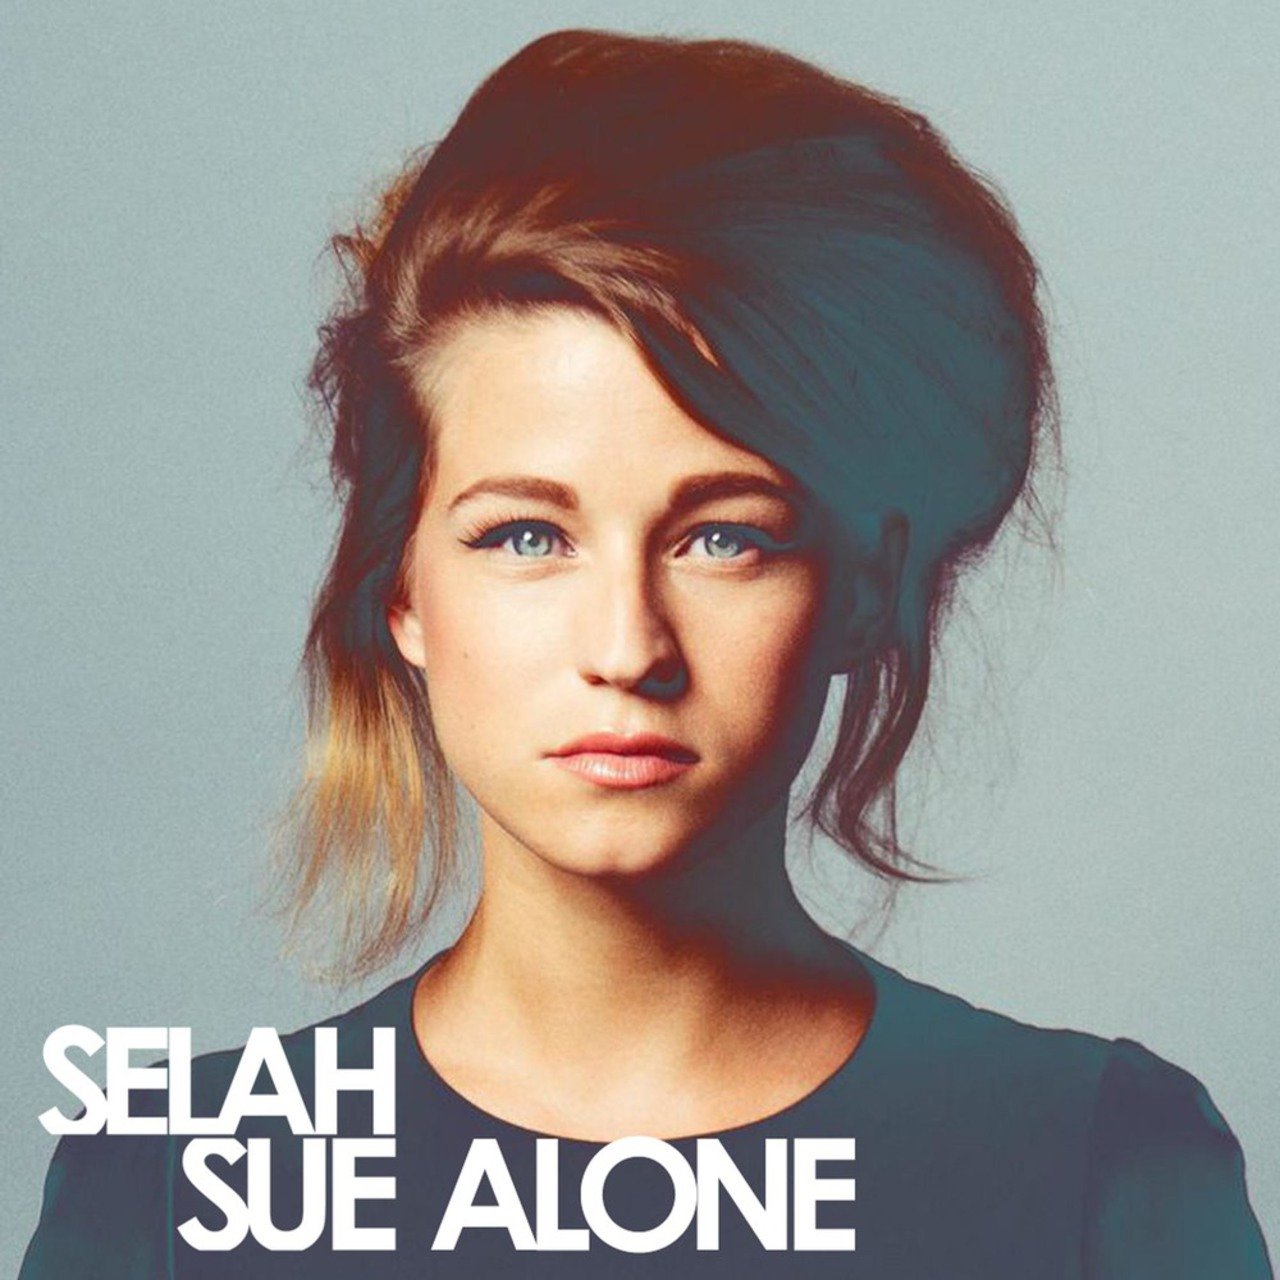 Selah Sue Alone cover artwork